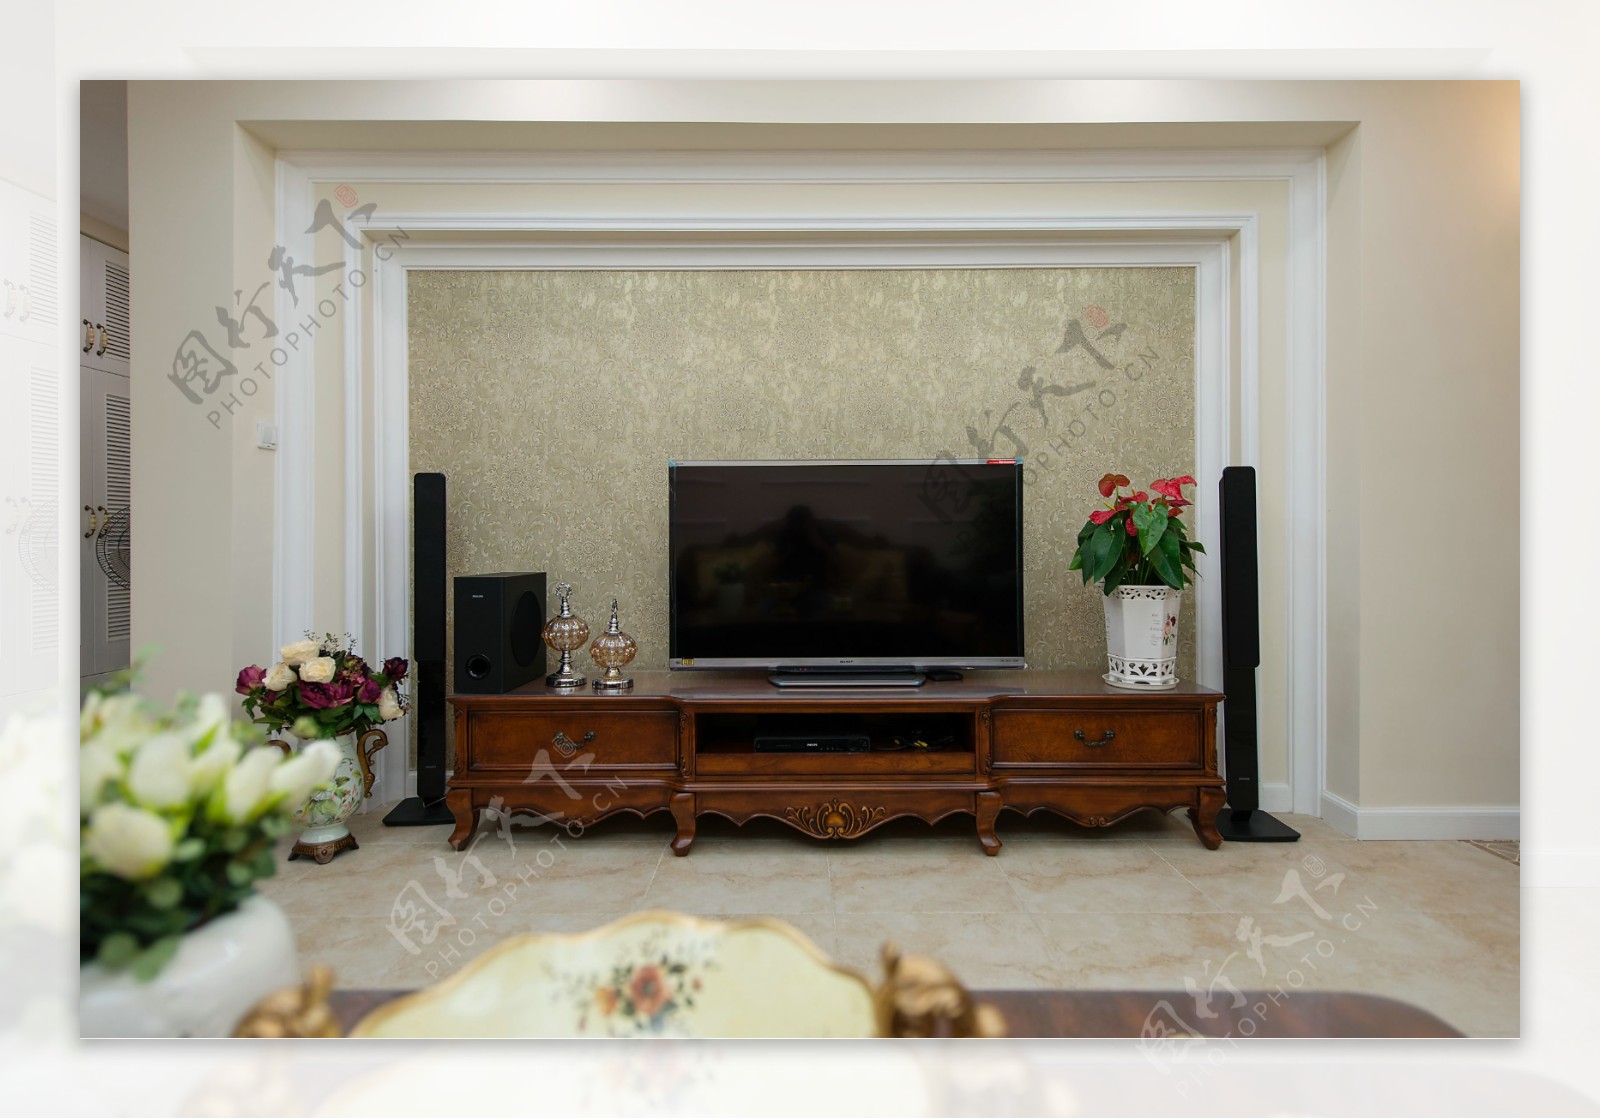 客厅美式电视背景装修效果图